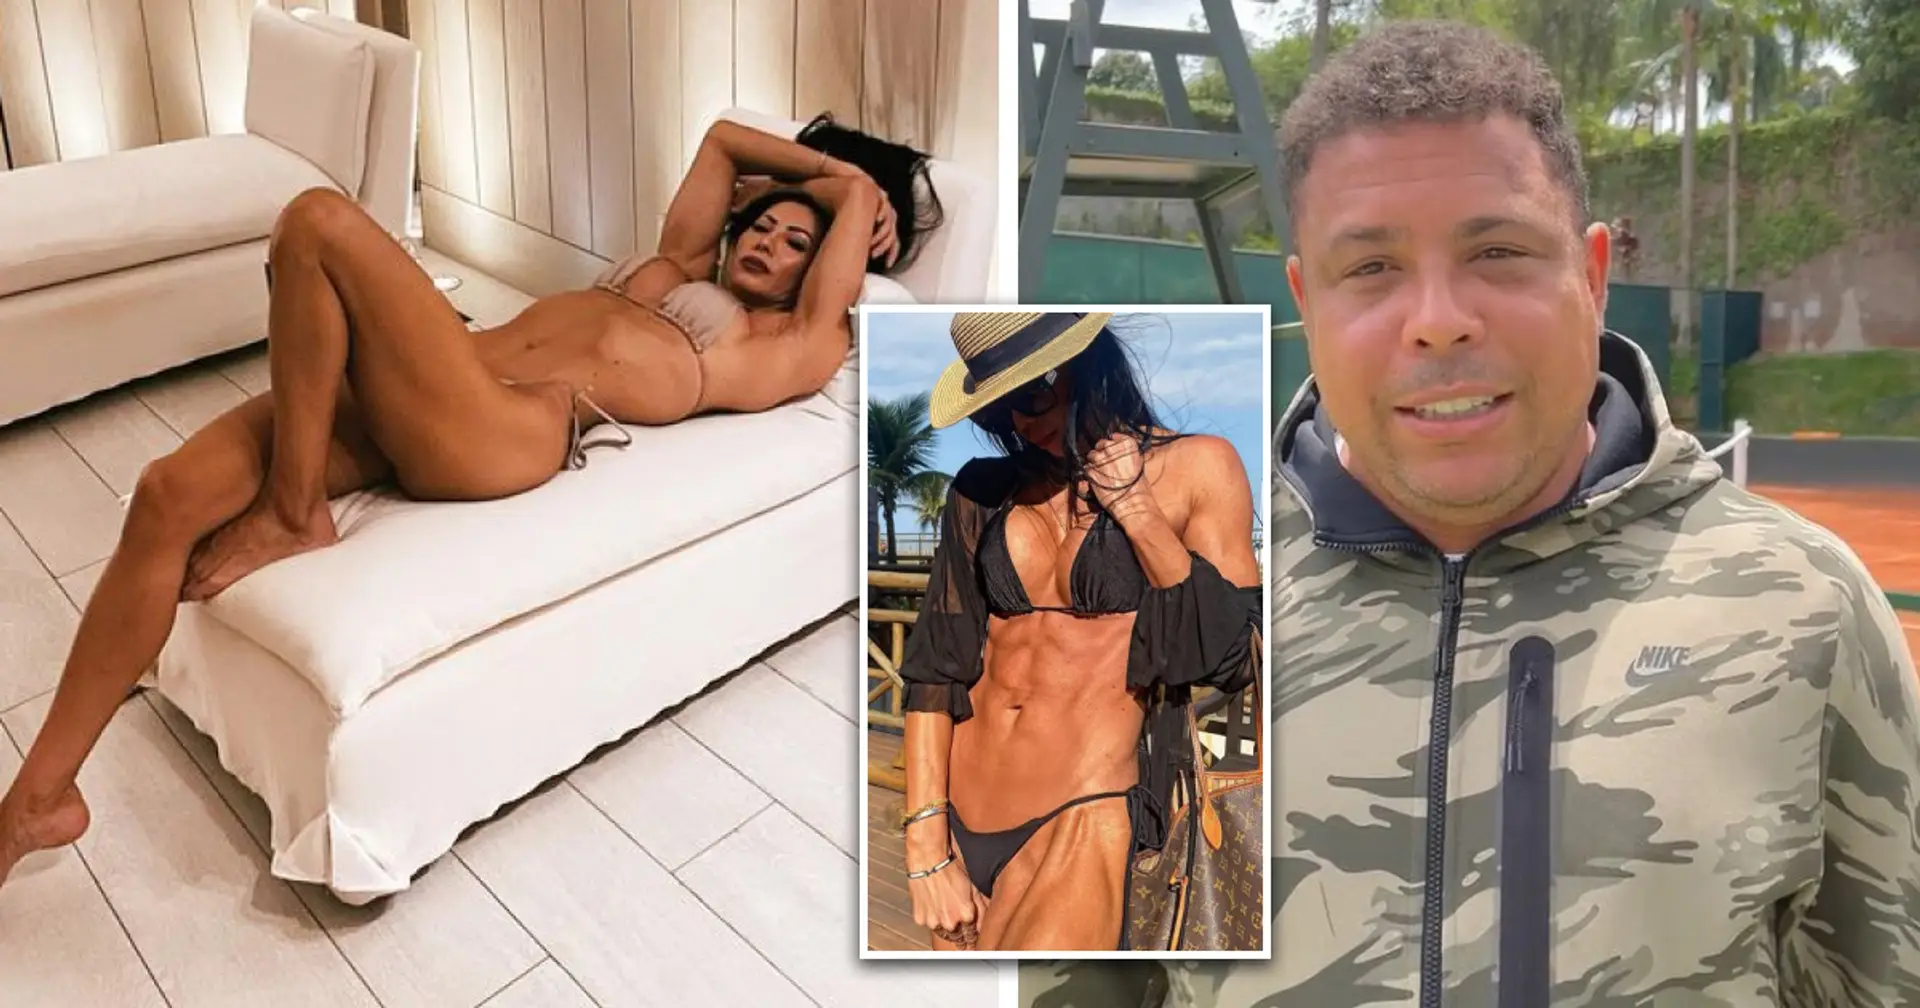 'I became insatiable': Ronaldo's bodybuilder ex shares how steroids enhanced her sexual appetite